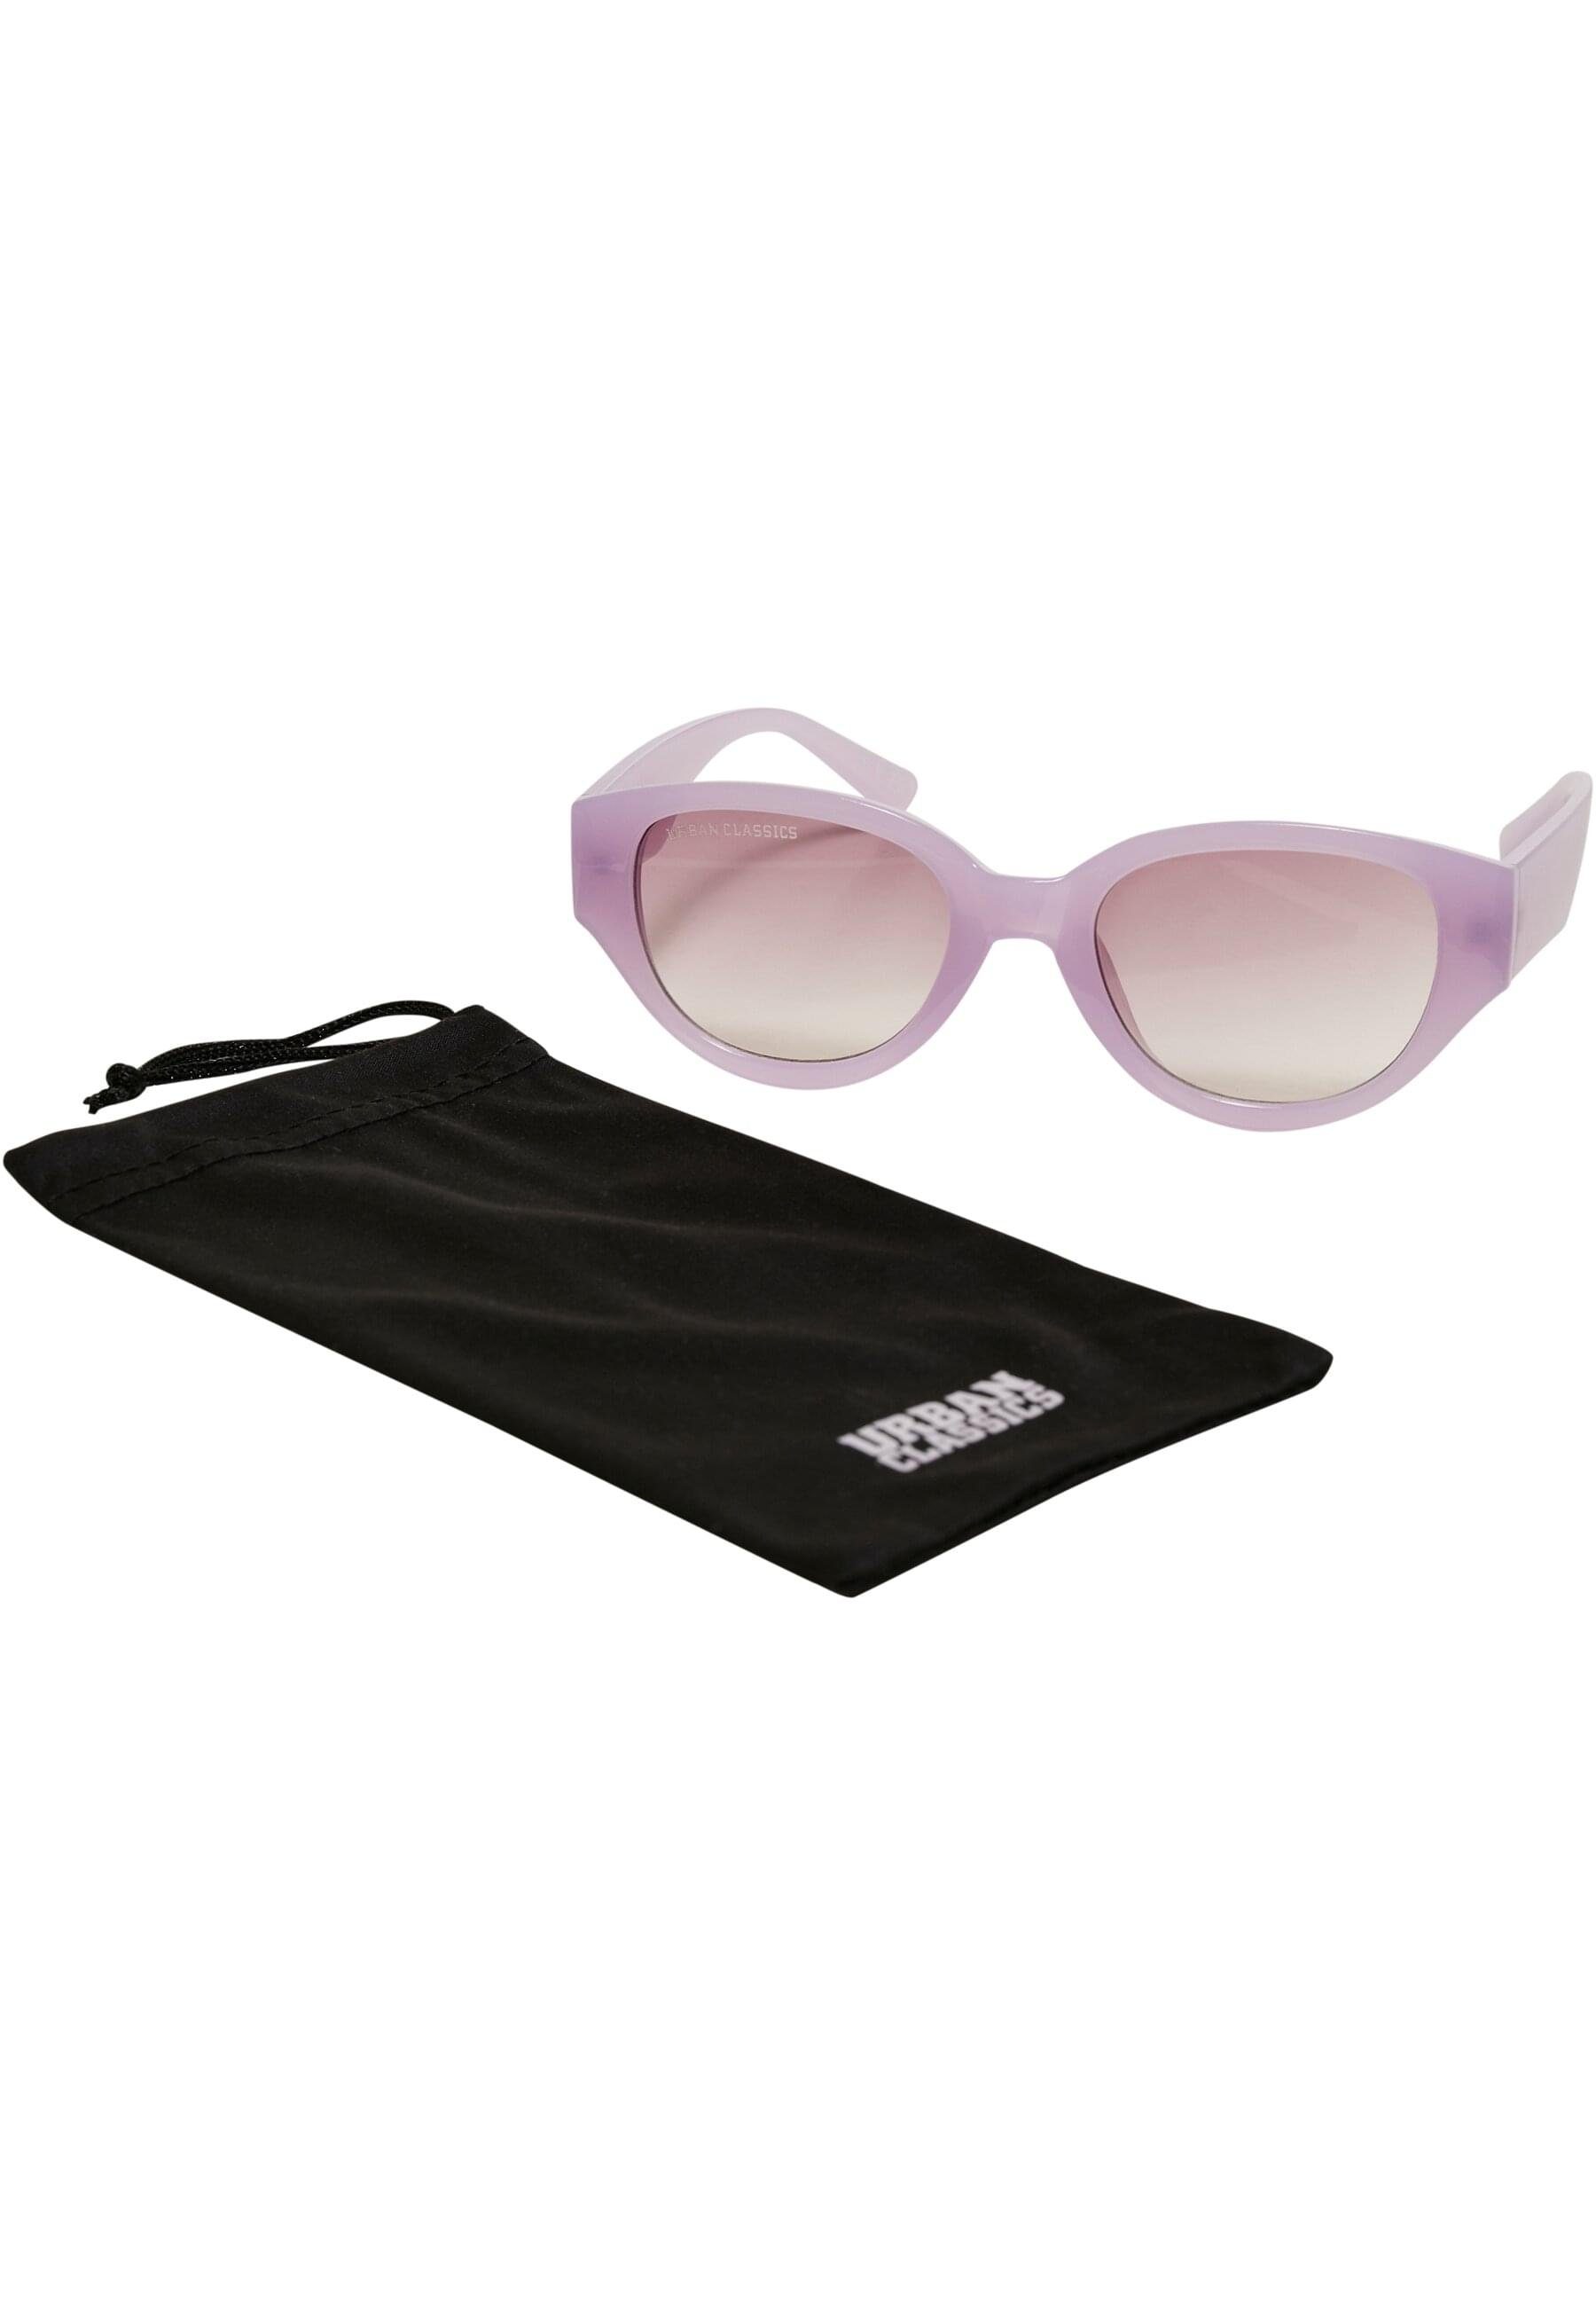 Unisex URBAN softlilac Sunglasses Cruz Sonnenbrille Santa CLASSICS